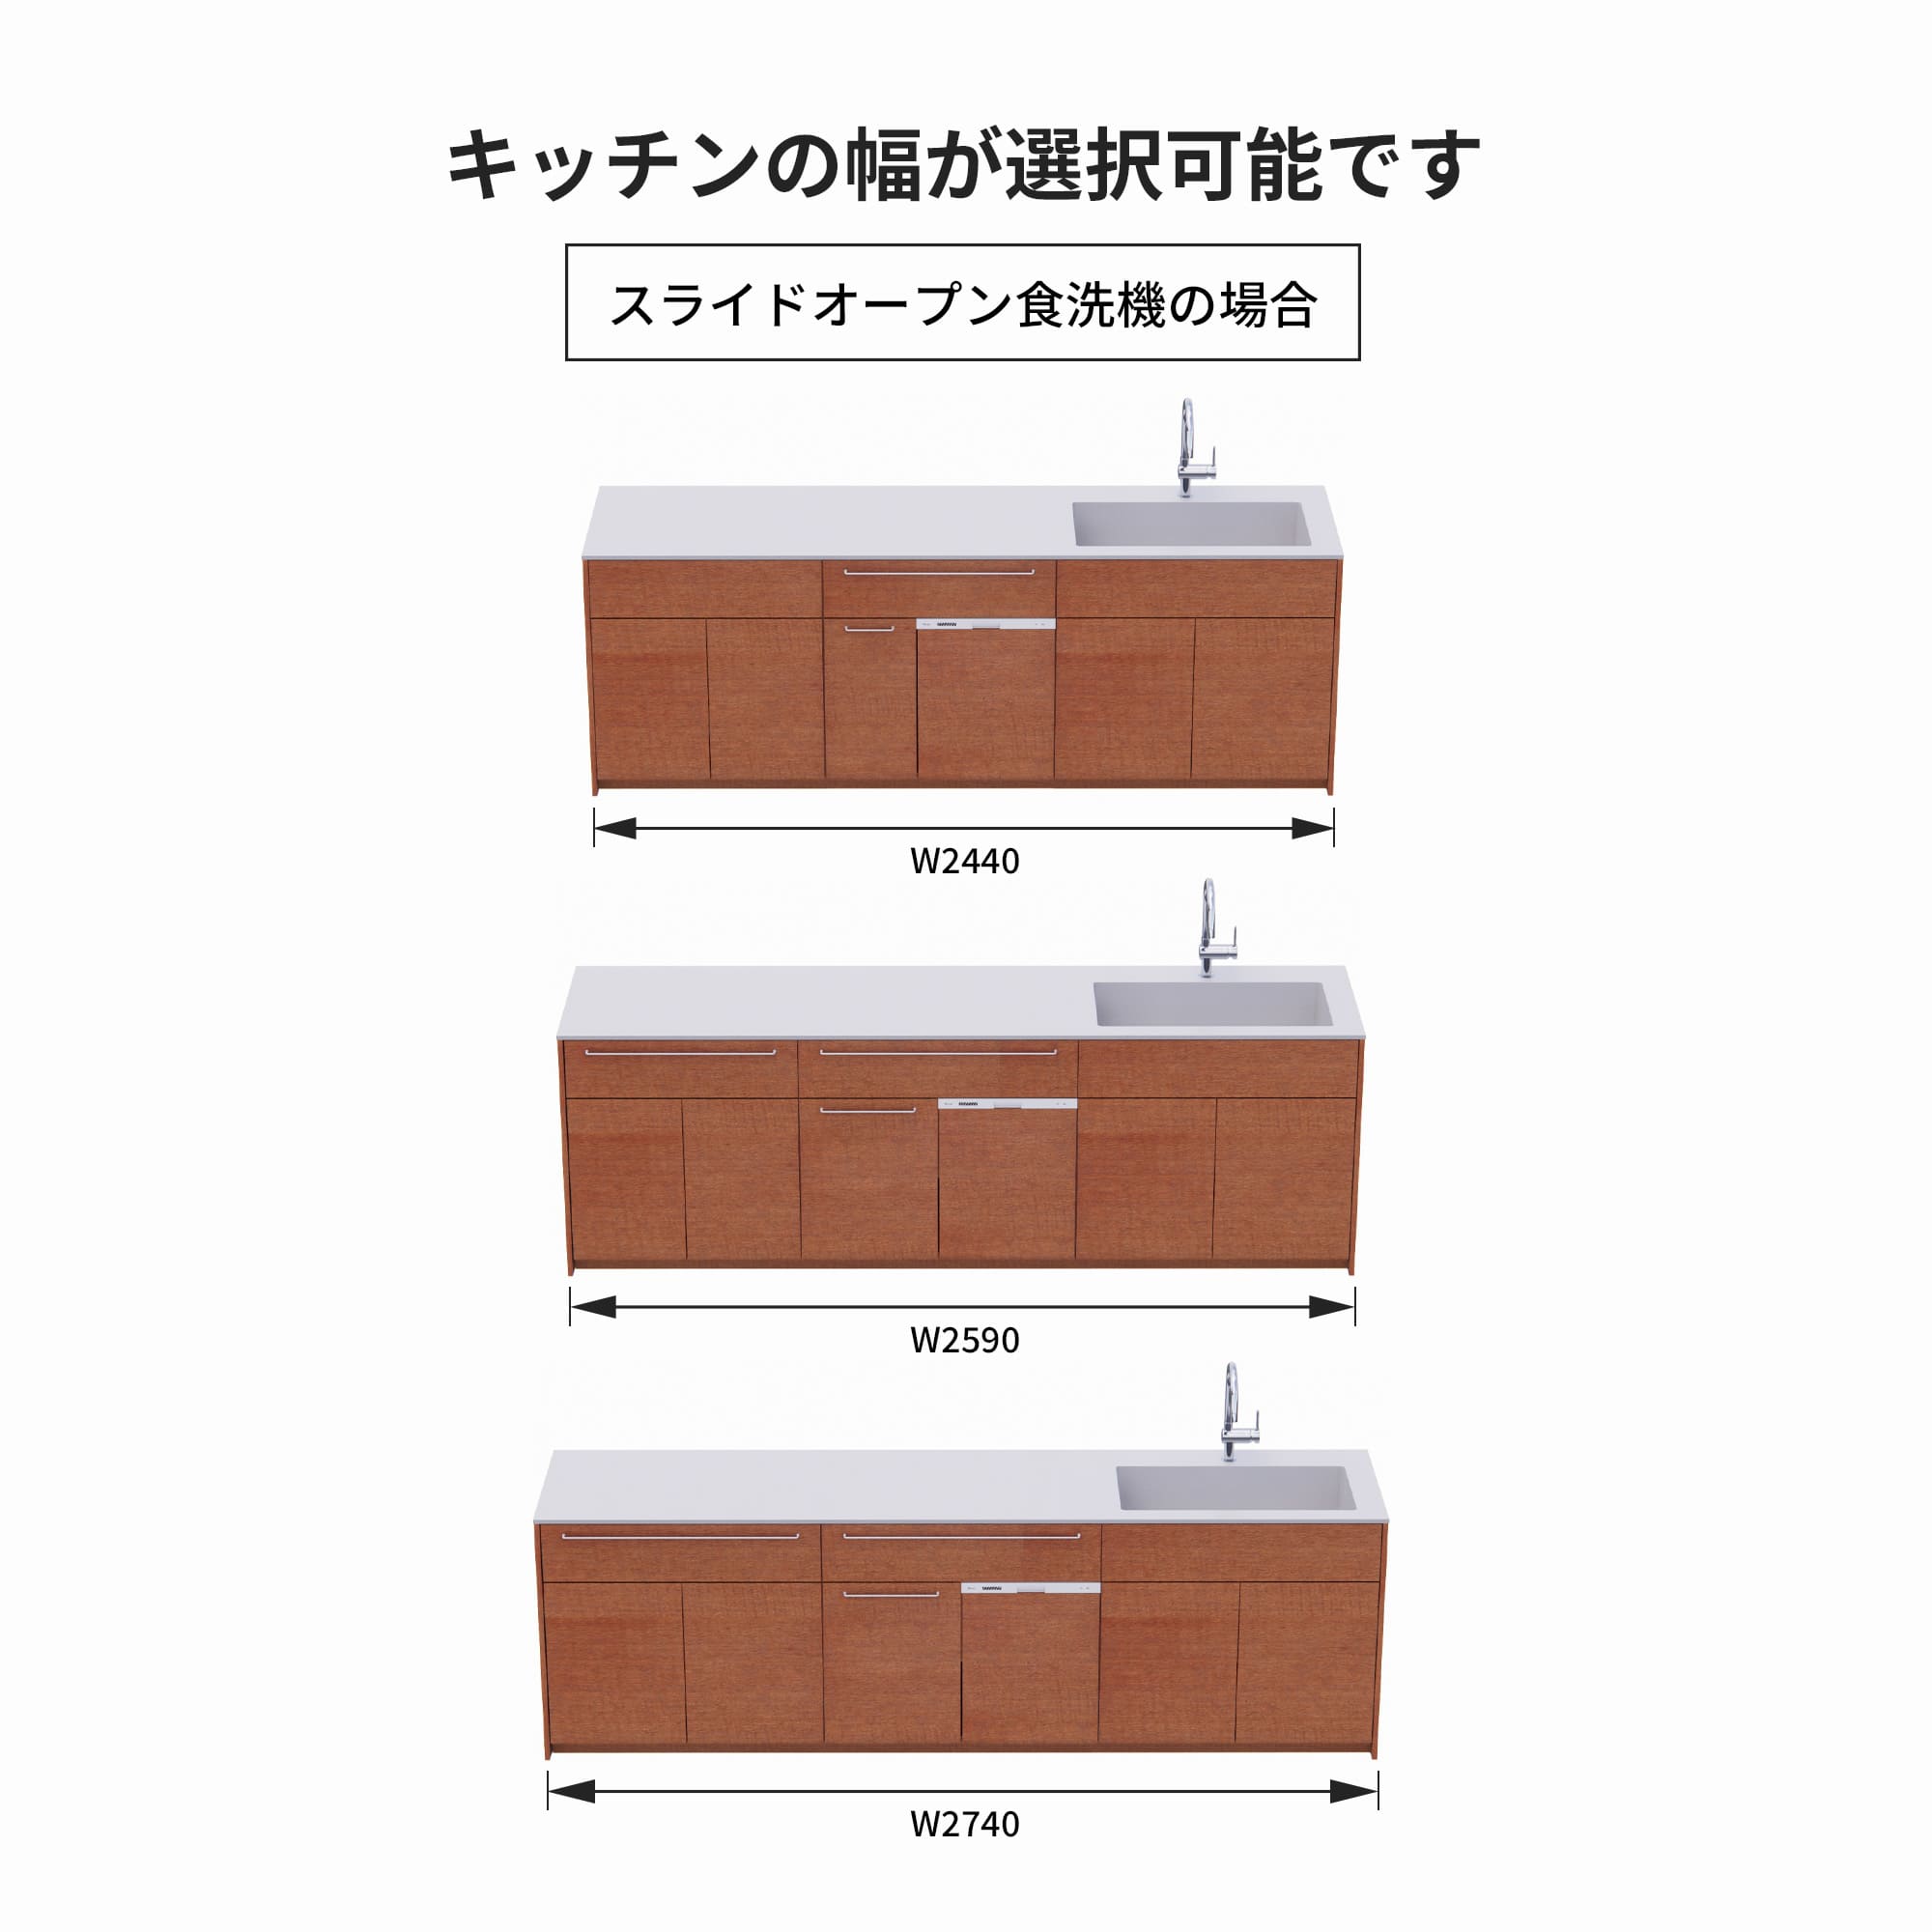 木製システムキッチン 壁付け型 W2440～2740・コンロなし / オーブンなし / 食洗機あり KB-KC022-27-G183 スライドオープンの場合